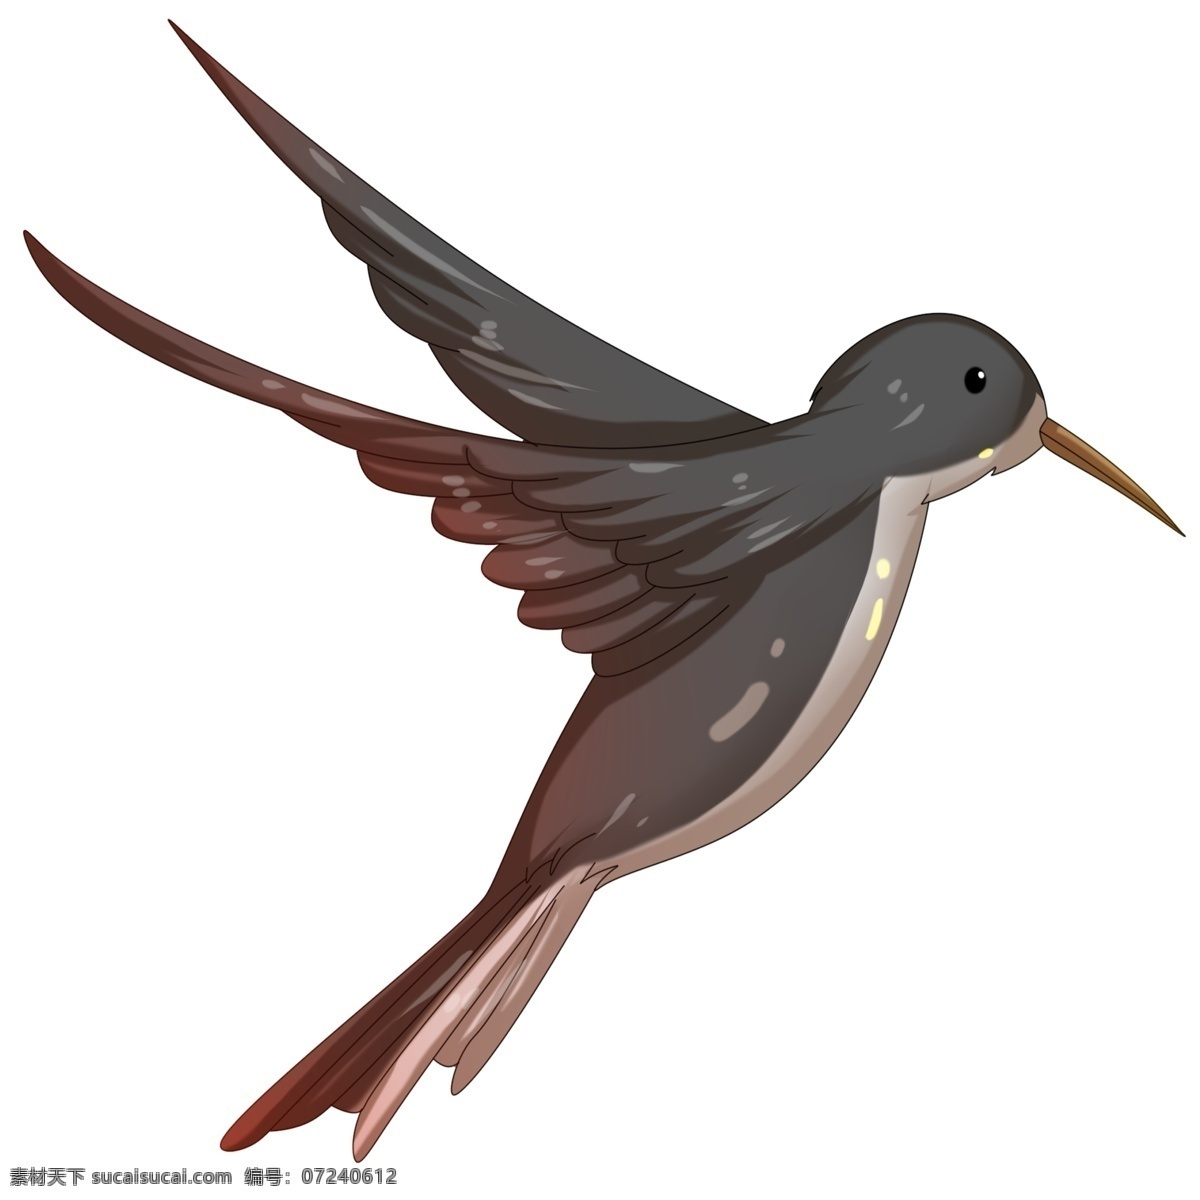 深灰色 燕子 插画 卡通燕子 飞行的燕子 翅膀 羽毛 动物 深灰色的燕子 下落 收拢